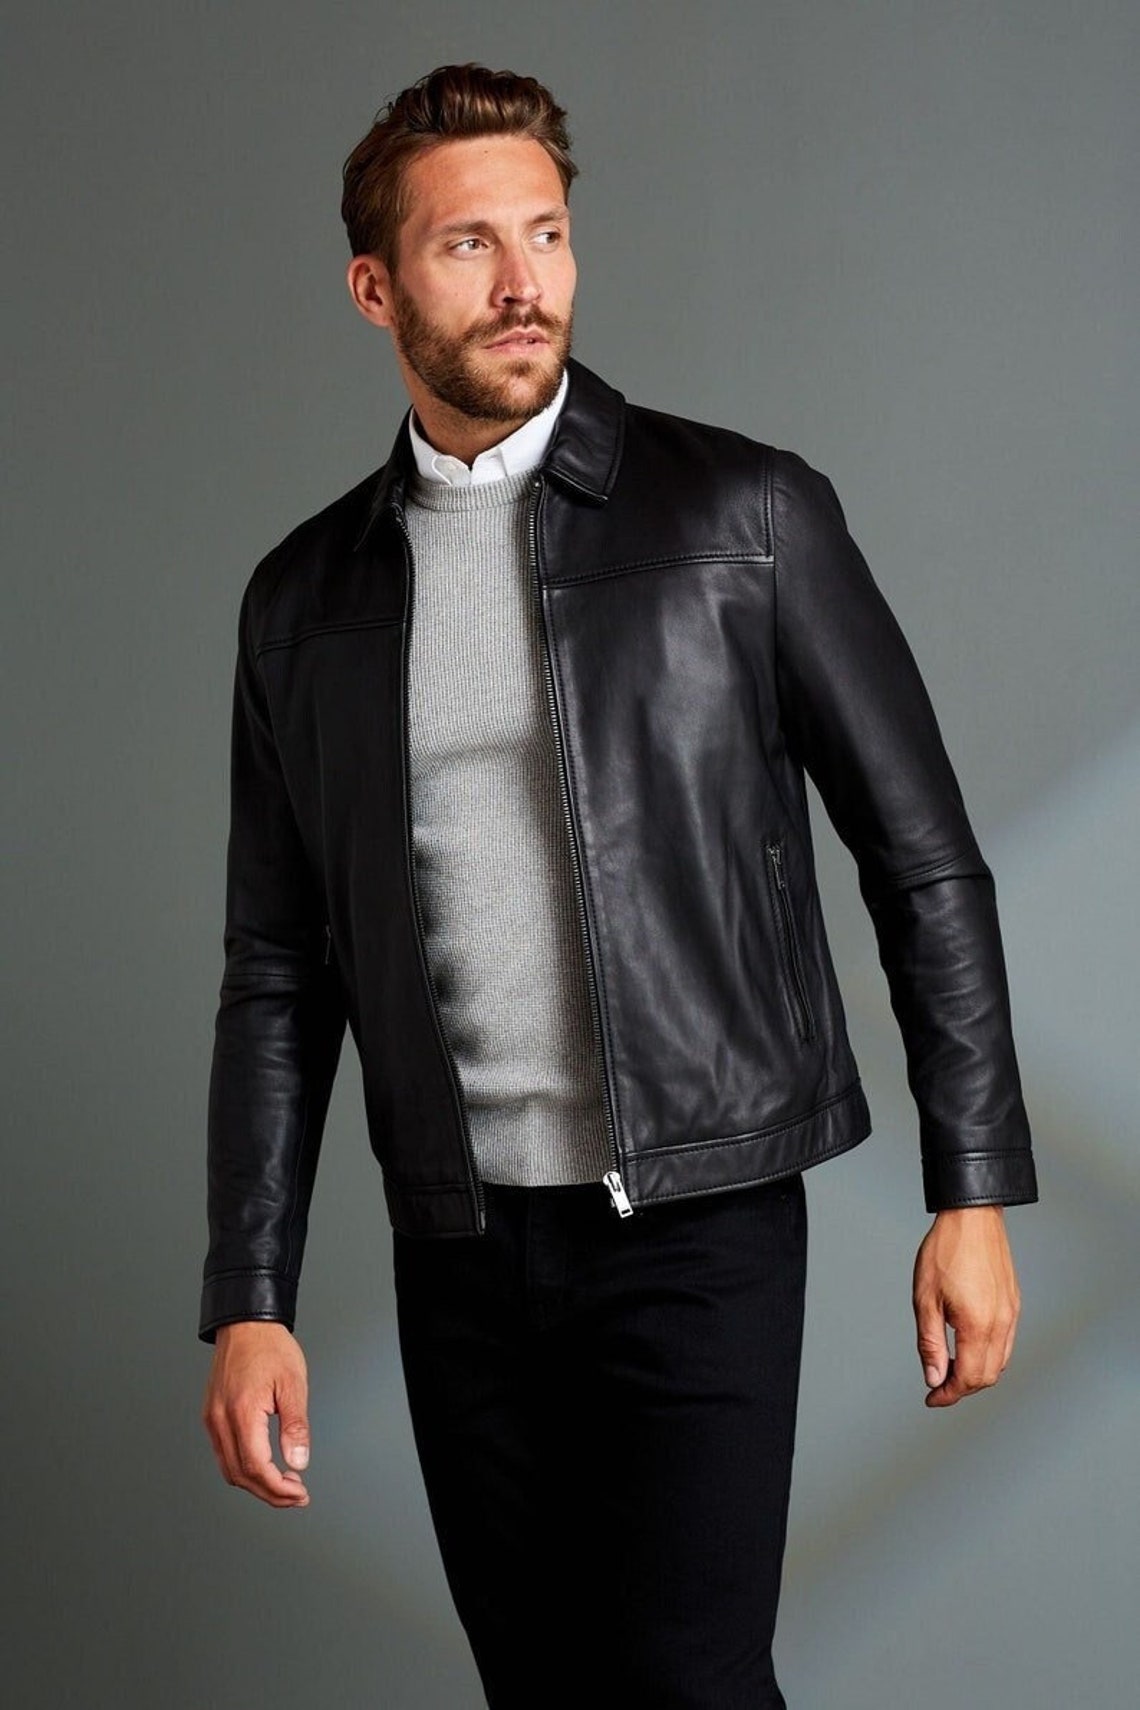 Black/brown Leather Racer Jacket. Leather Jacket Men, Men's Leather ...